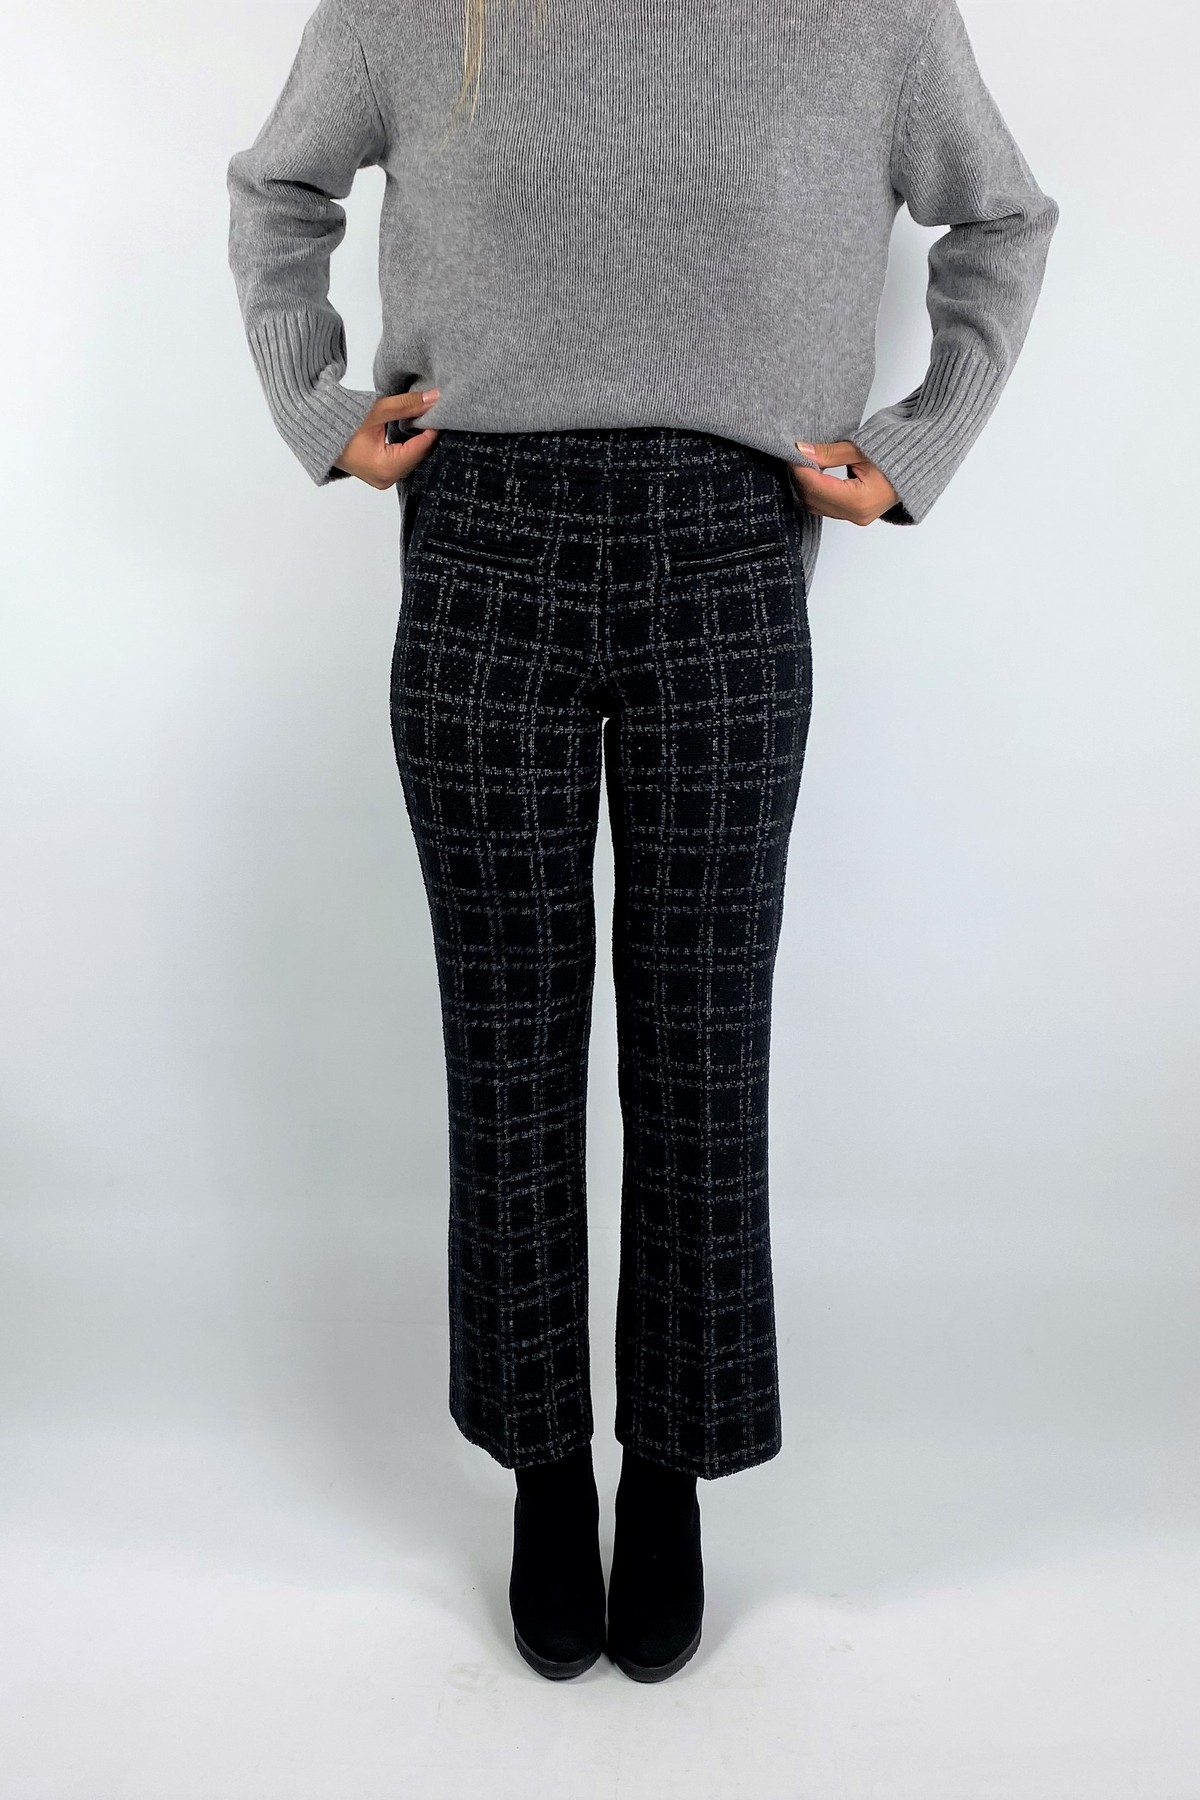 Broek tweed lurex check in de kleur zwart grijs ecru van het merk Cambio